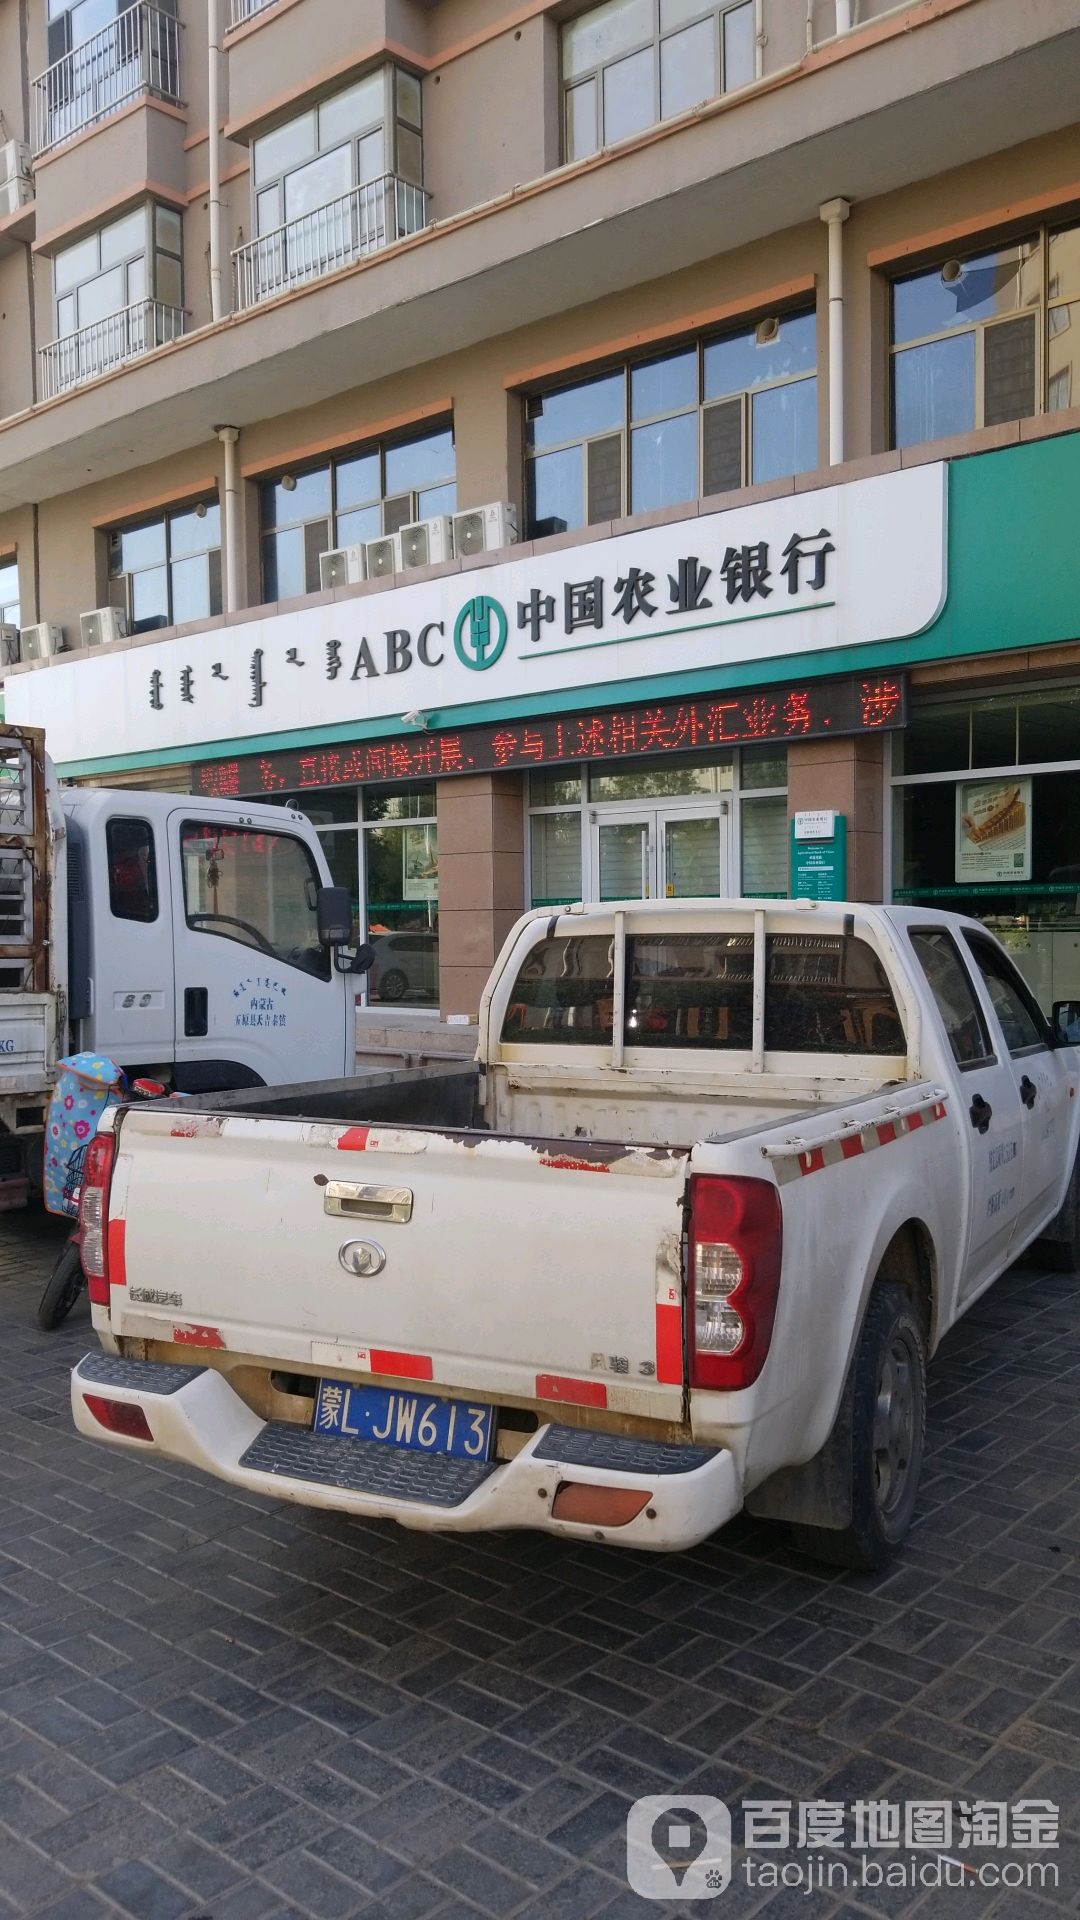 中國農業銀行24小時自助銀行(東風路)